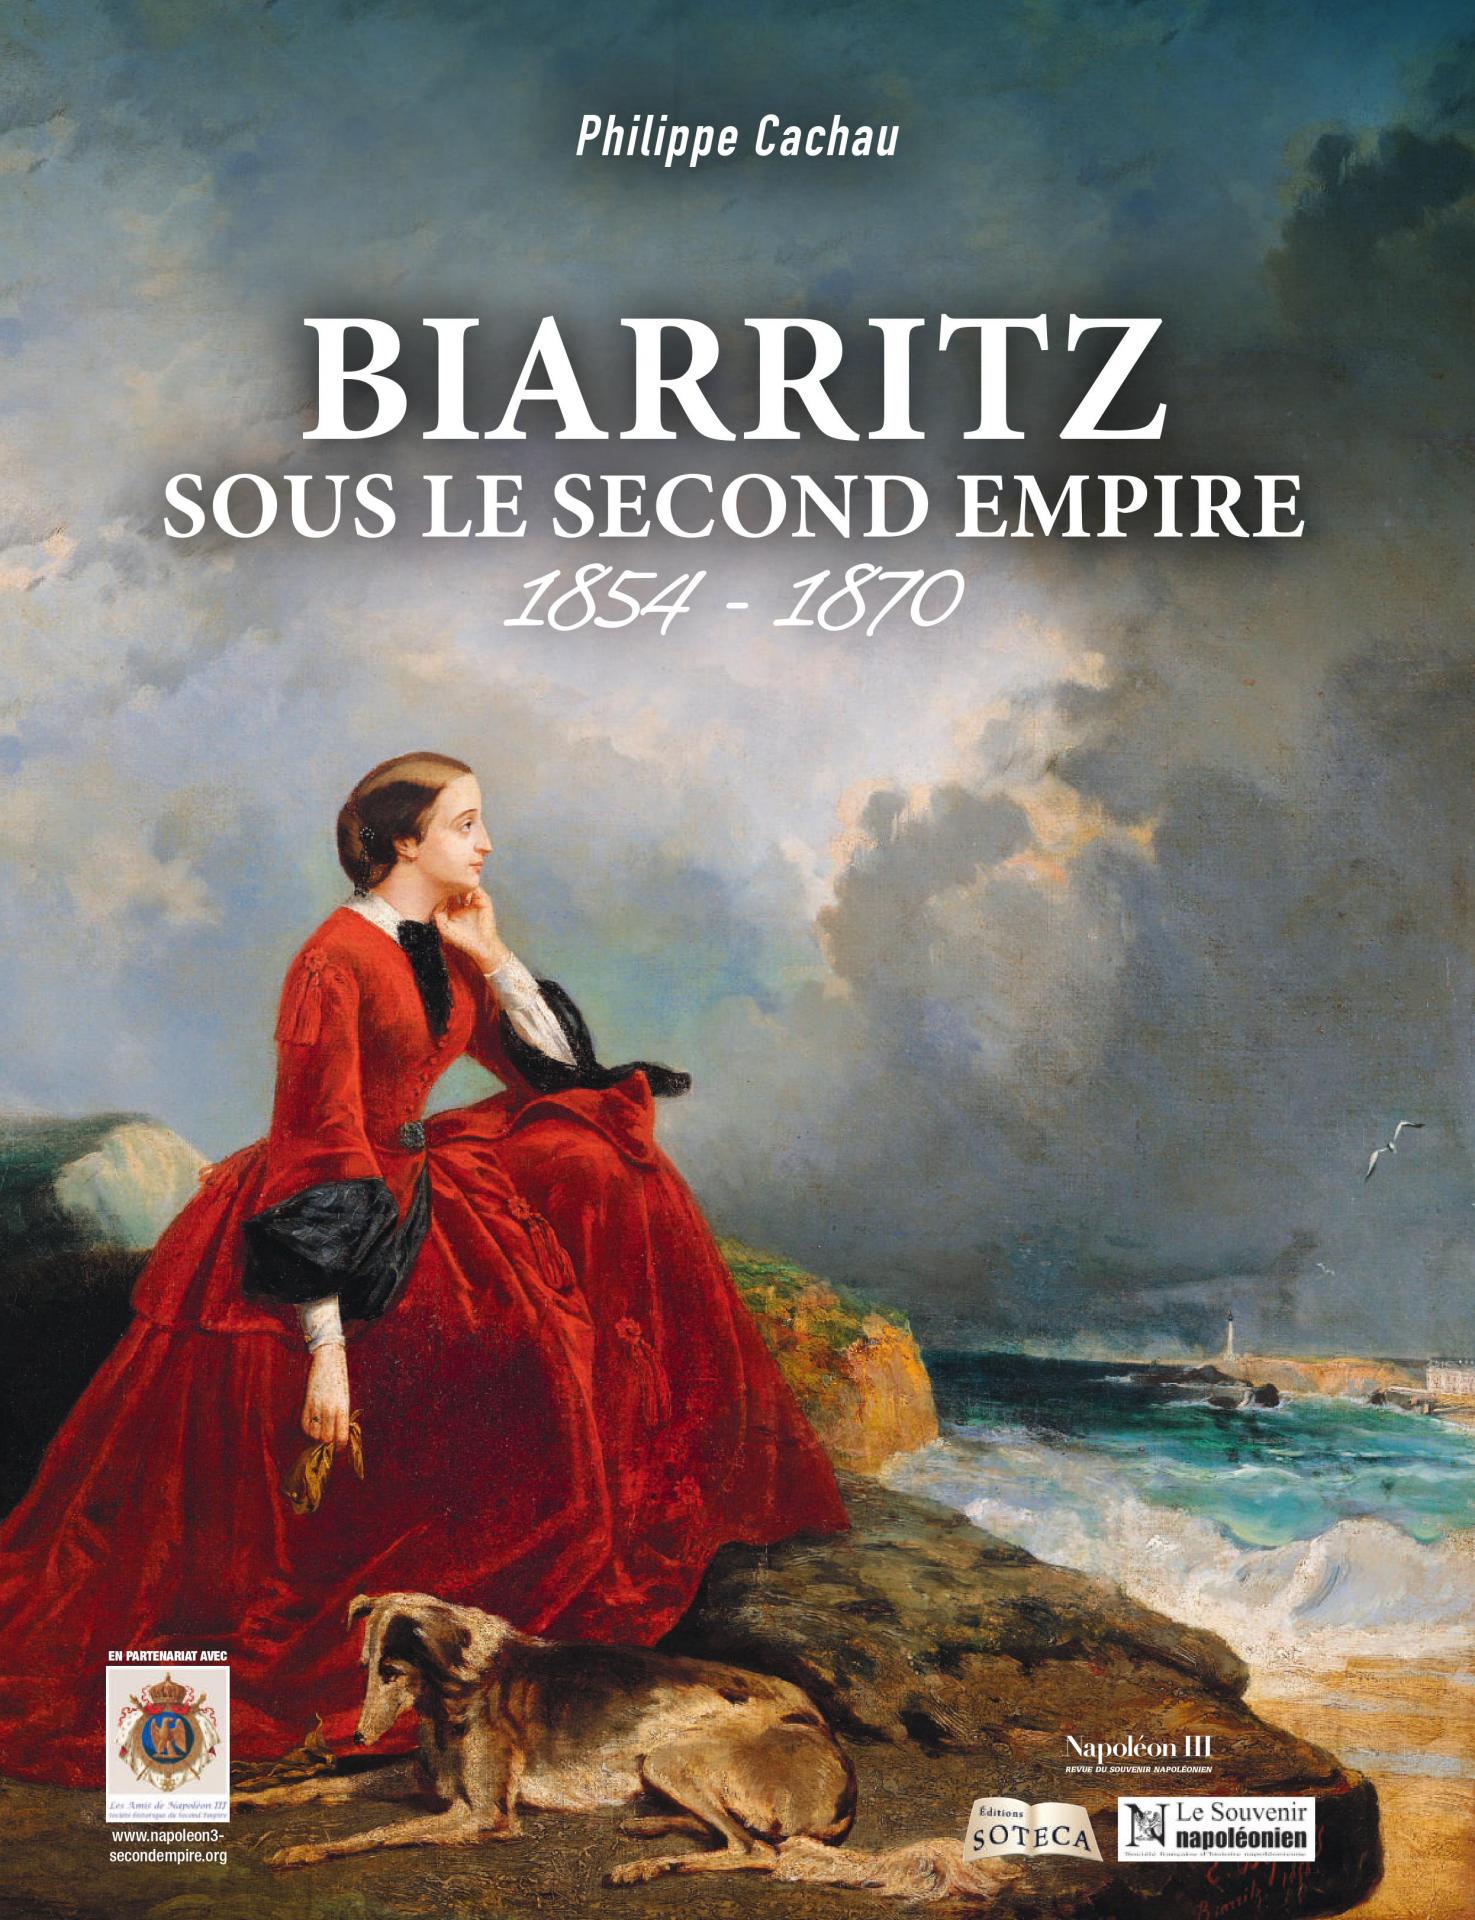 Biarritz sous le Second Empire, édition Soteca, 2020